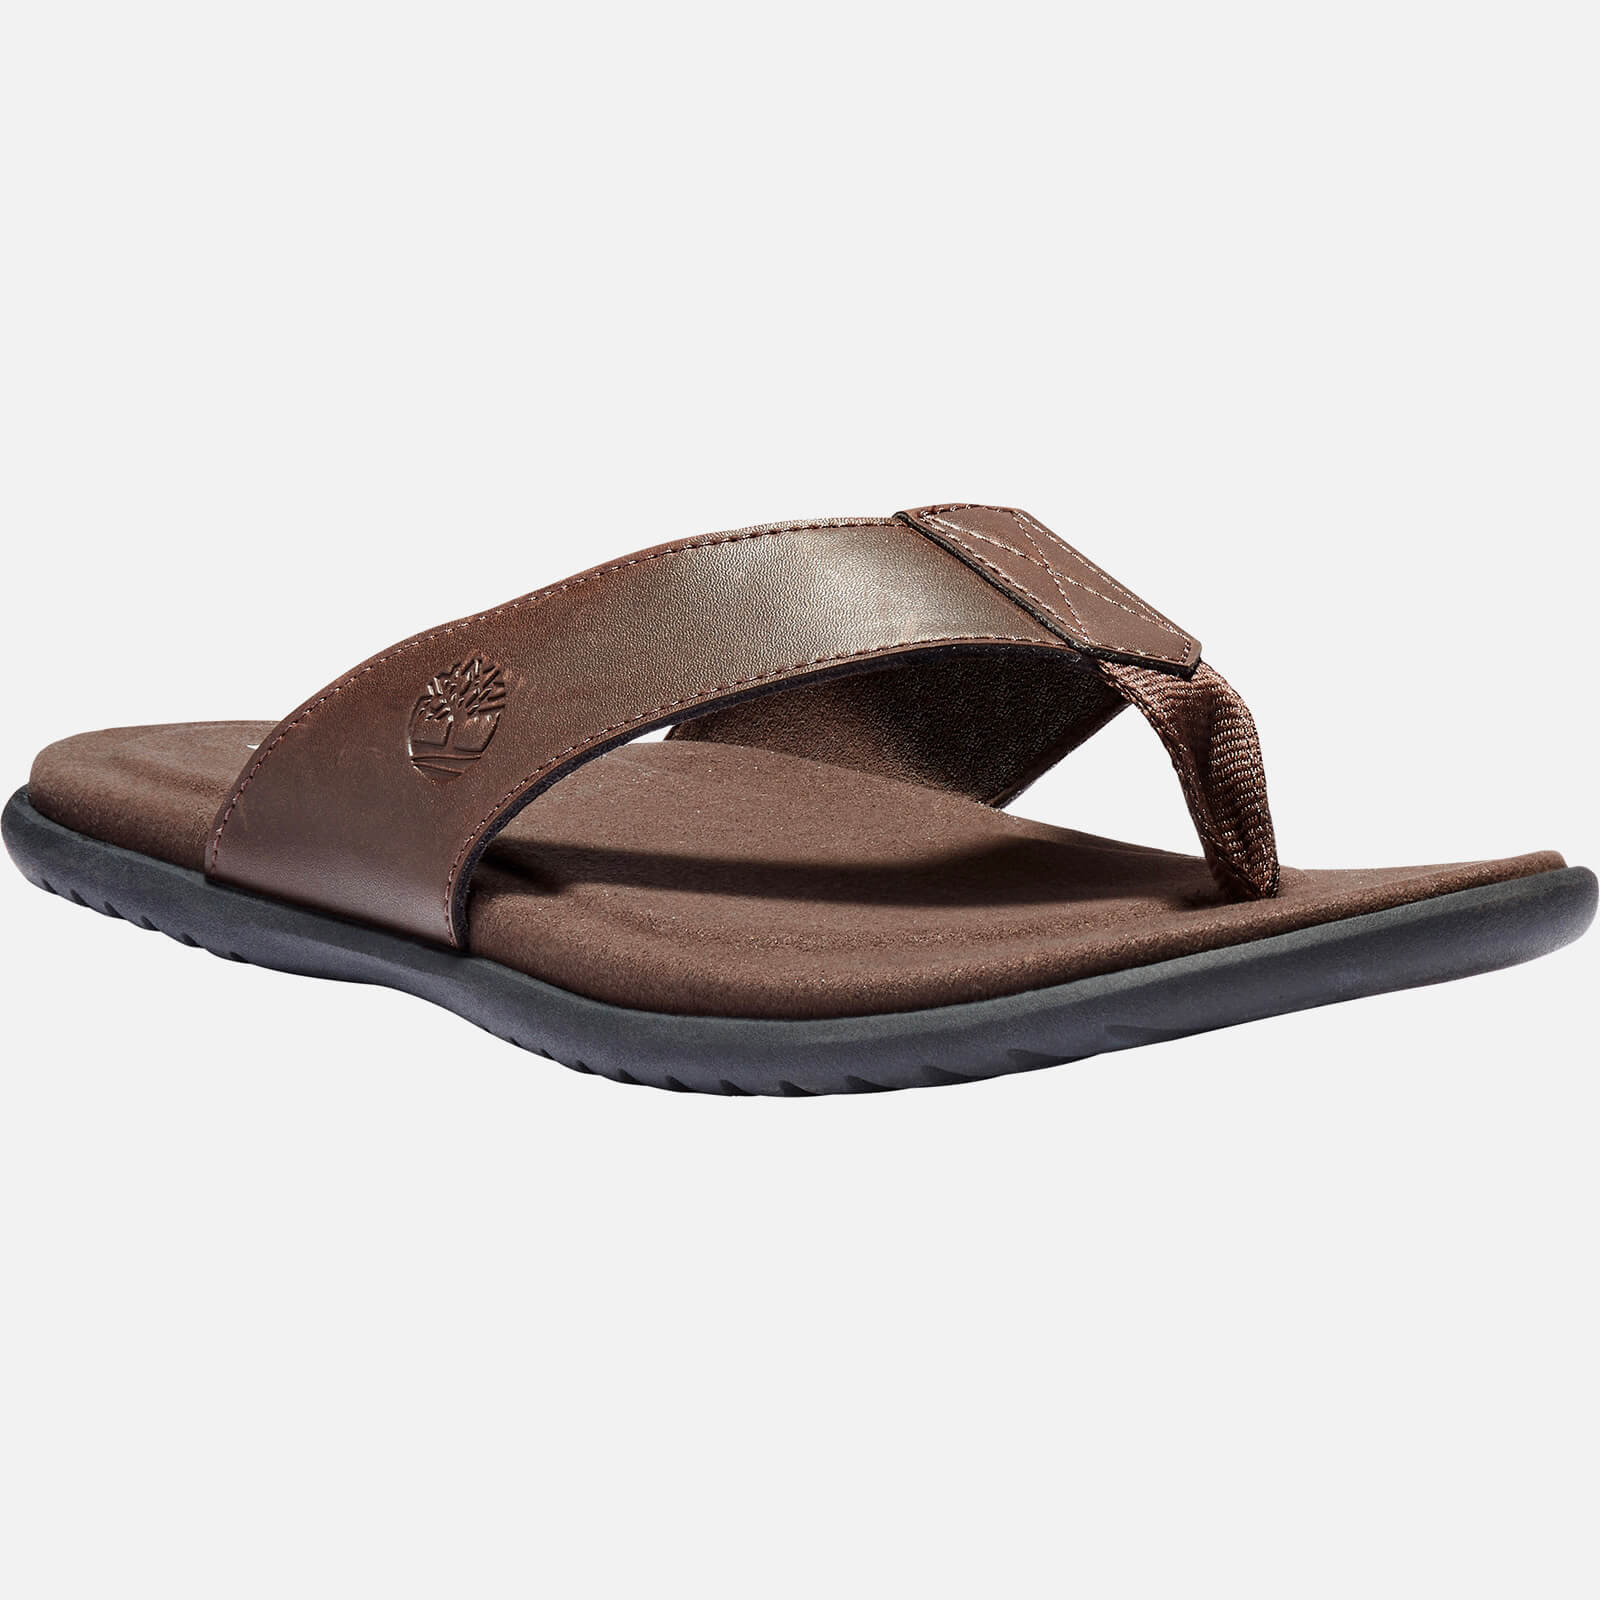 Timberland Men's Kesler Cove Leather Toe Post Sandals - Dark Brown - UK 7.5